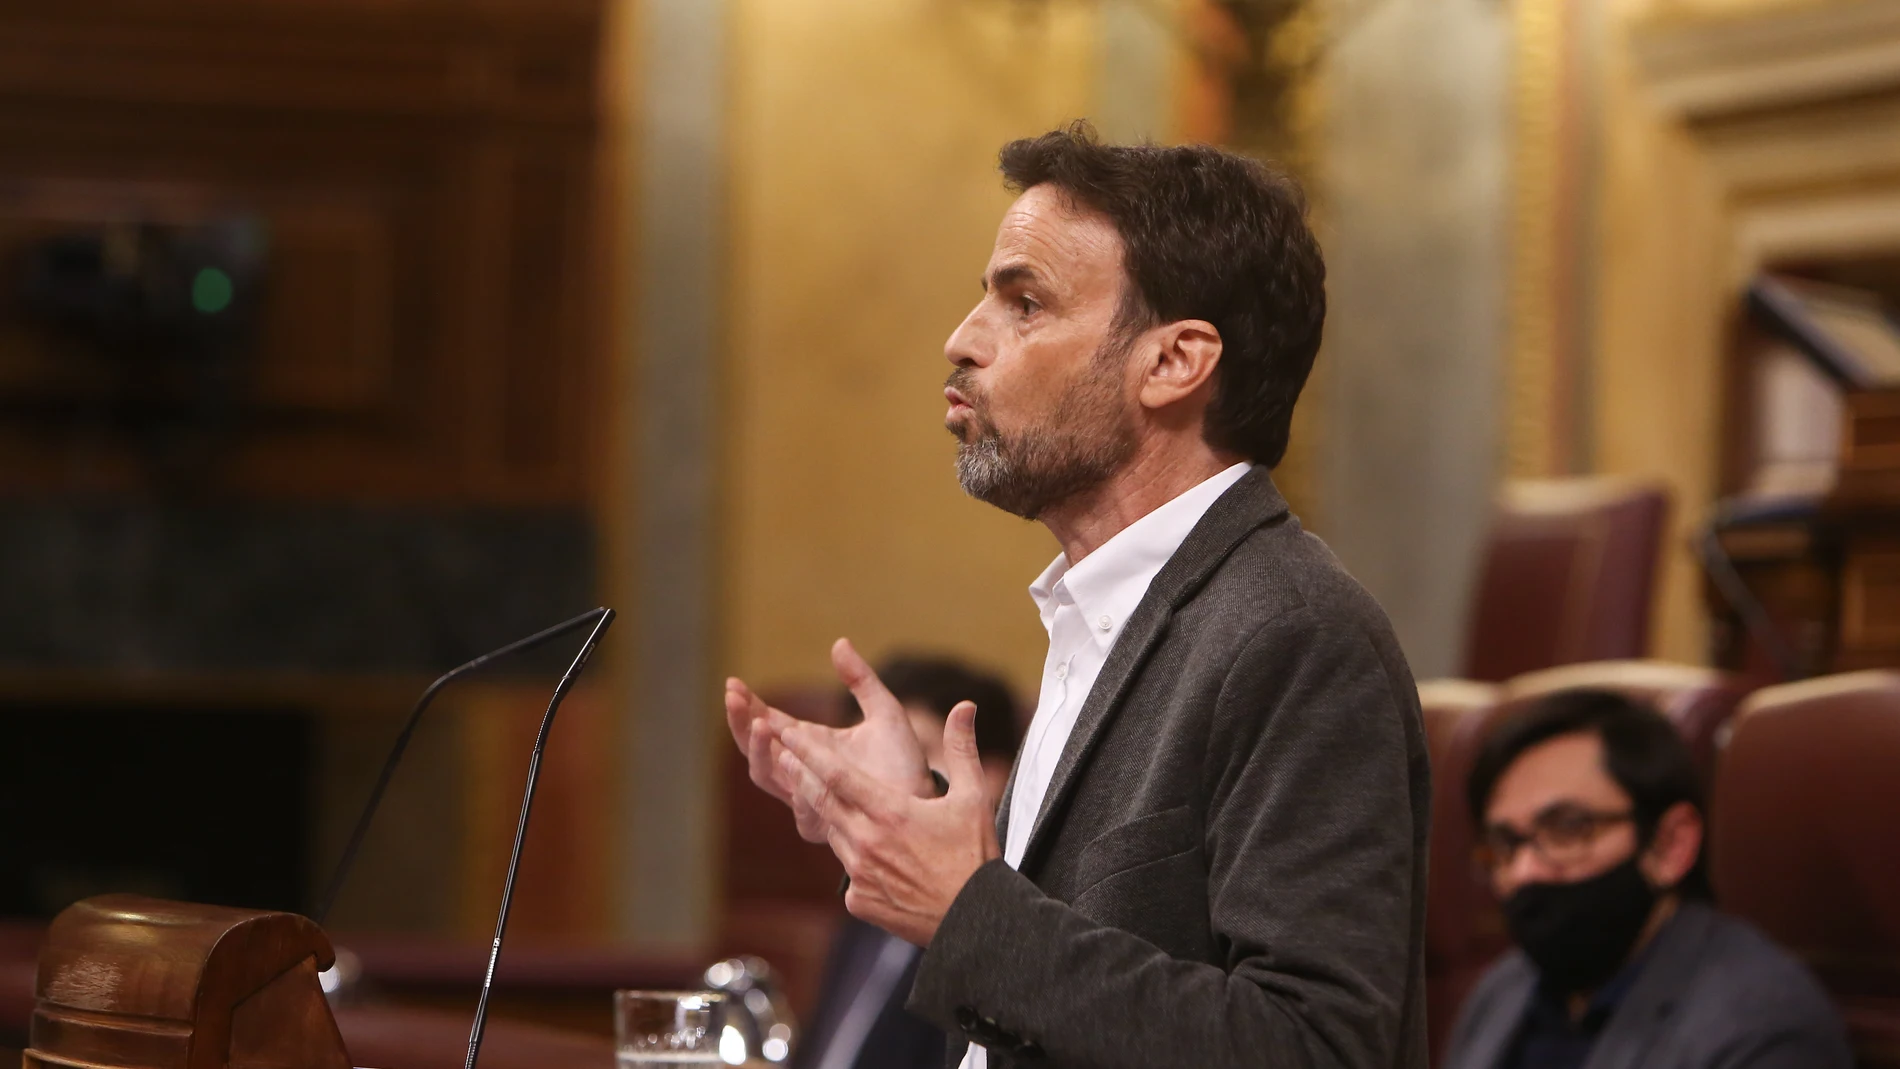 El presidente del grupo de Unidas Podemos en el Congreso, Jaume Asens, interviene durante una sesión plenaria en el Congreso de los Diputados